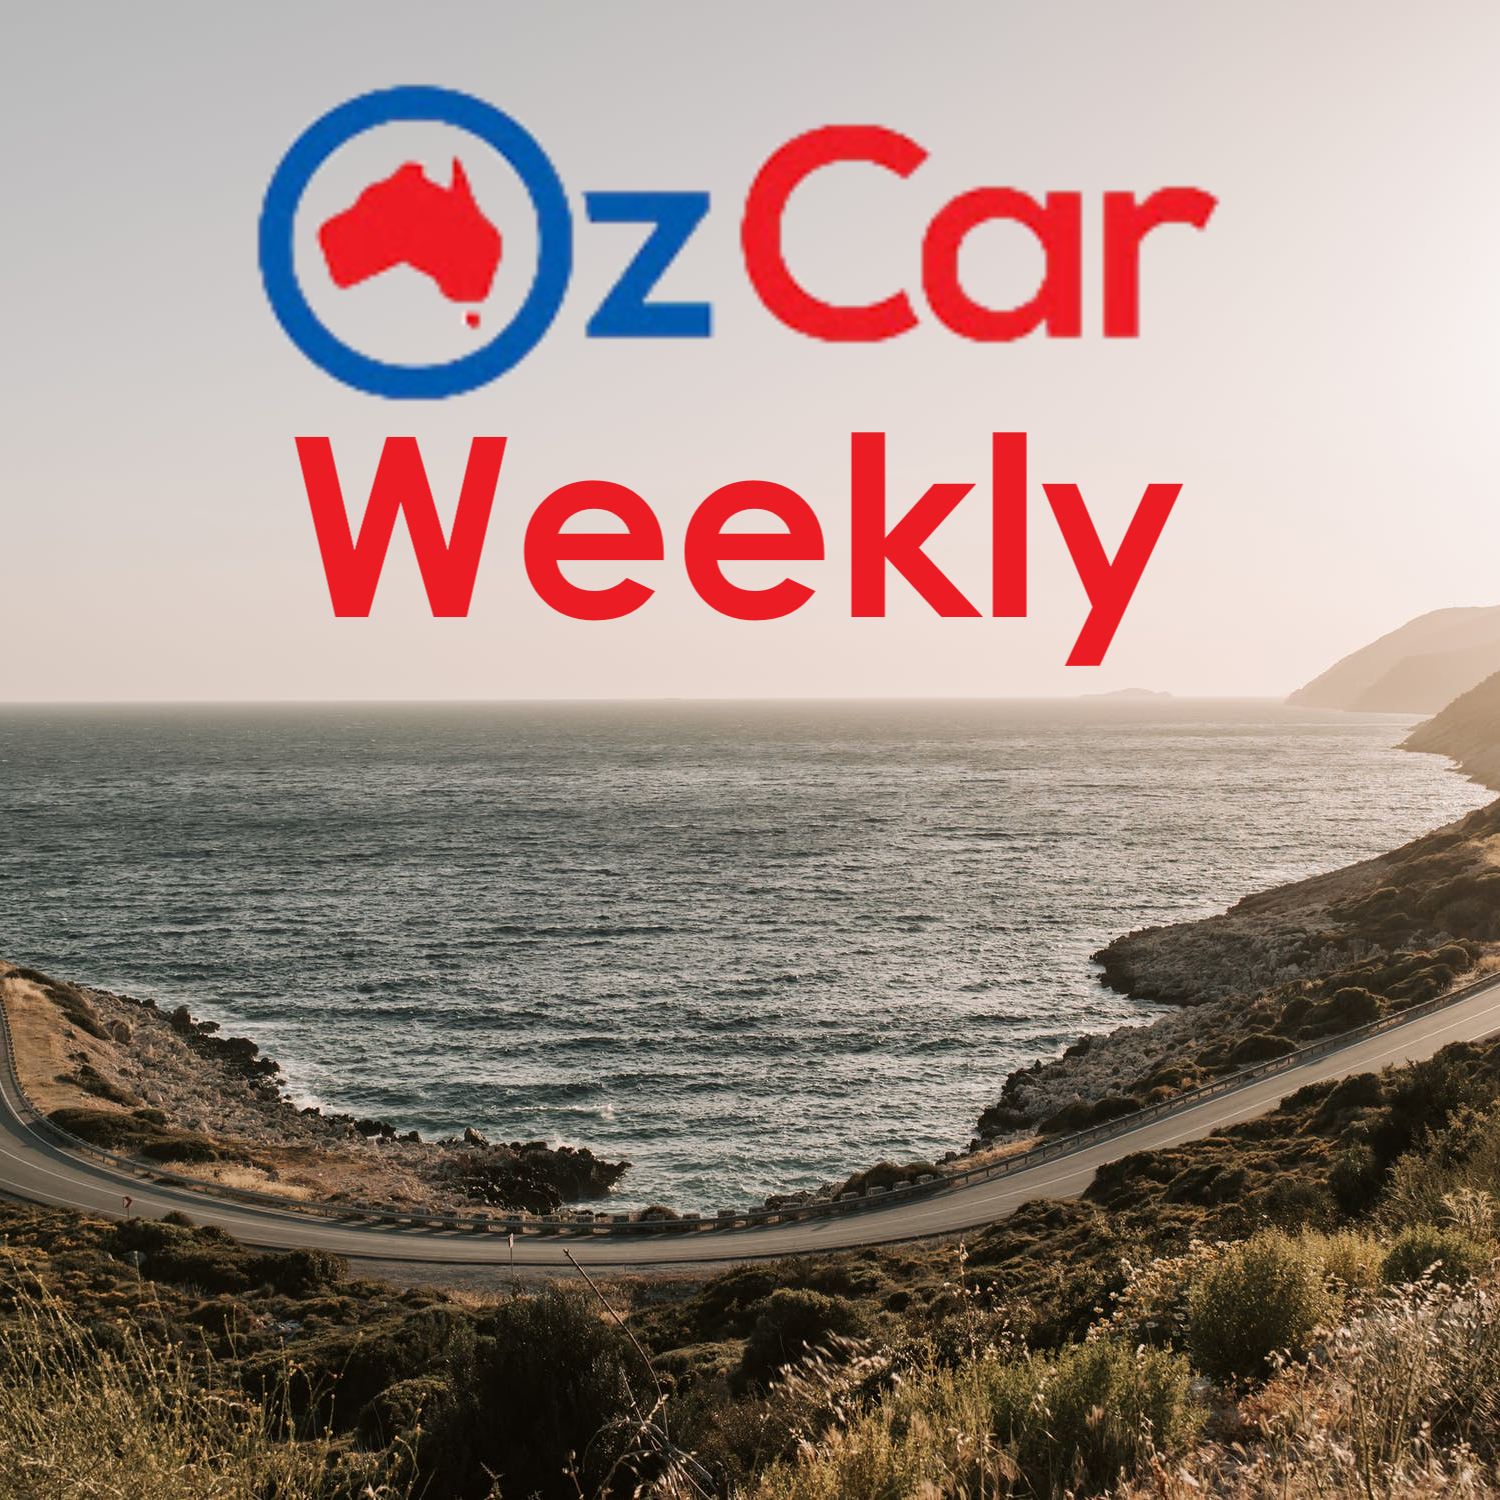 OzCar Weekly Episode 30